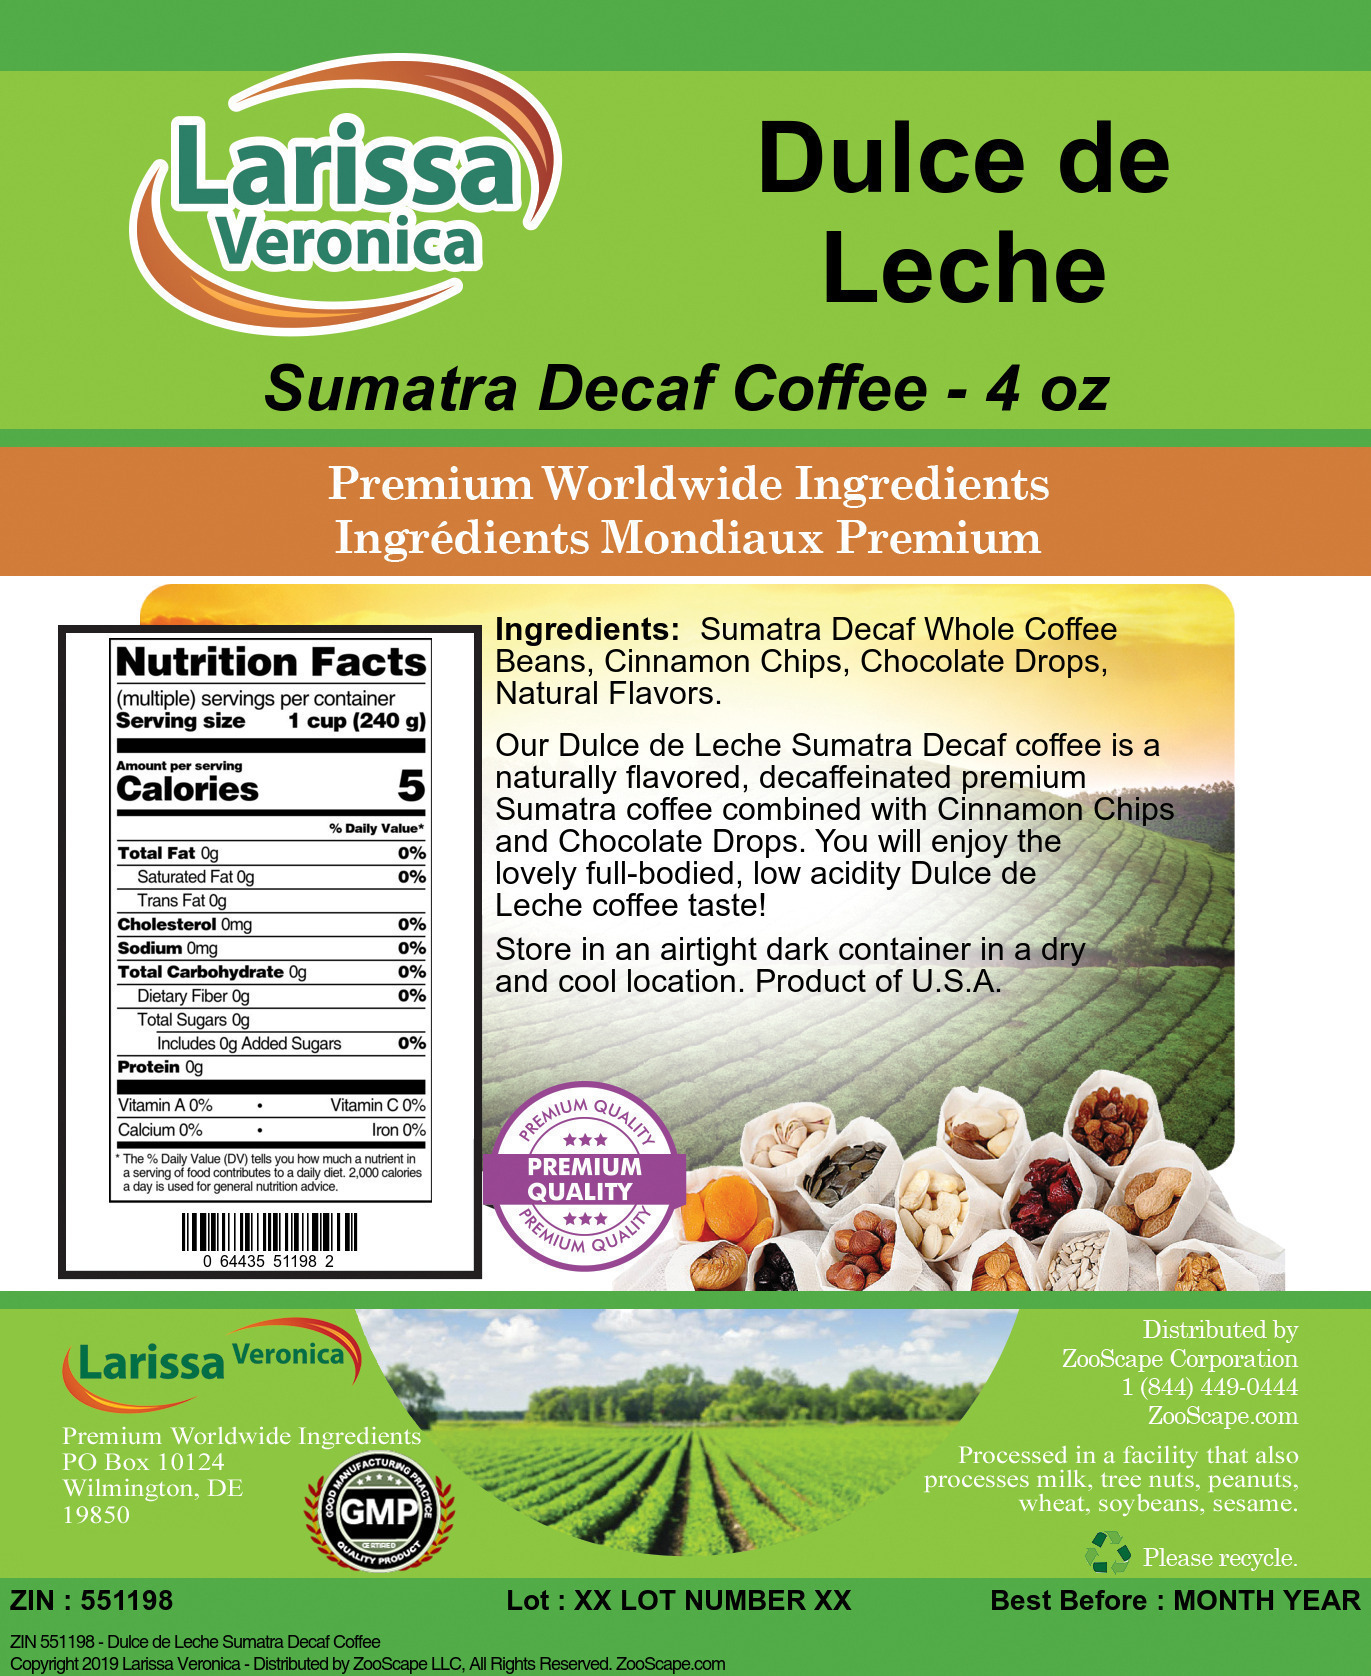 Dulce de Leche Sumatra Decaf Coffee - Label